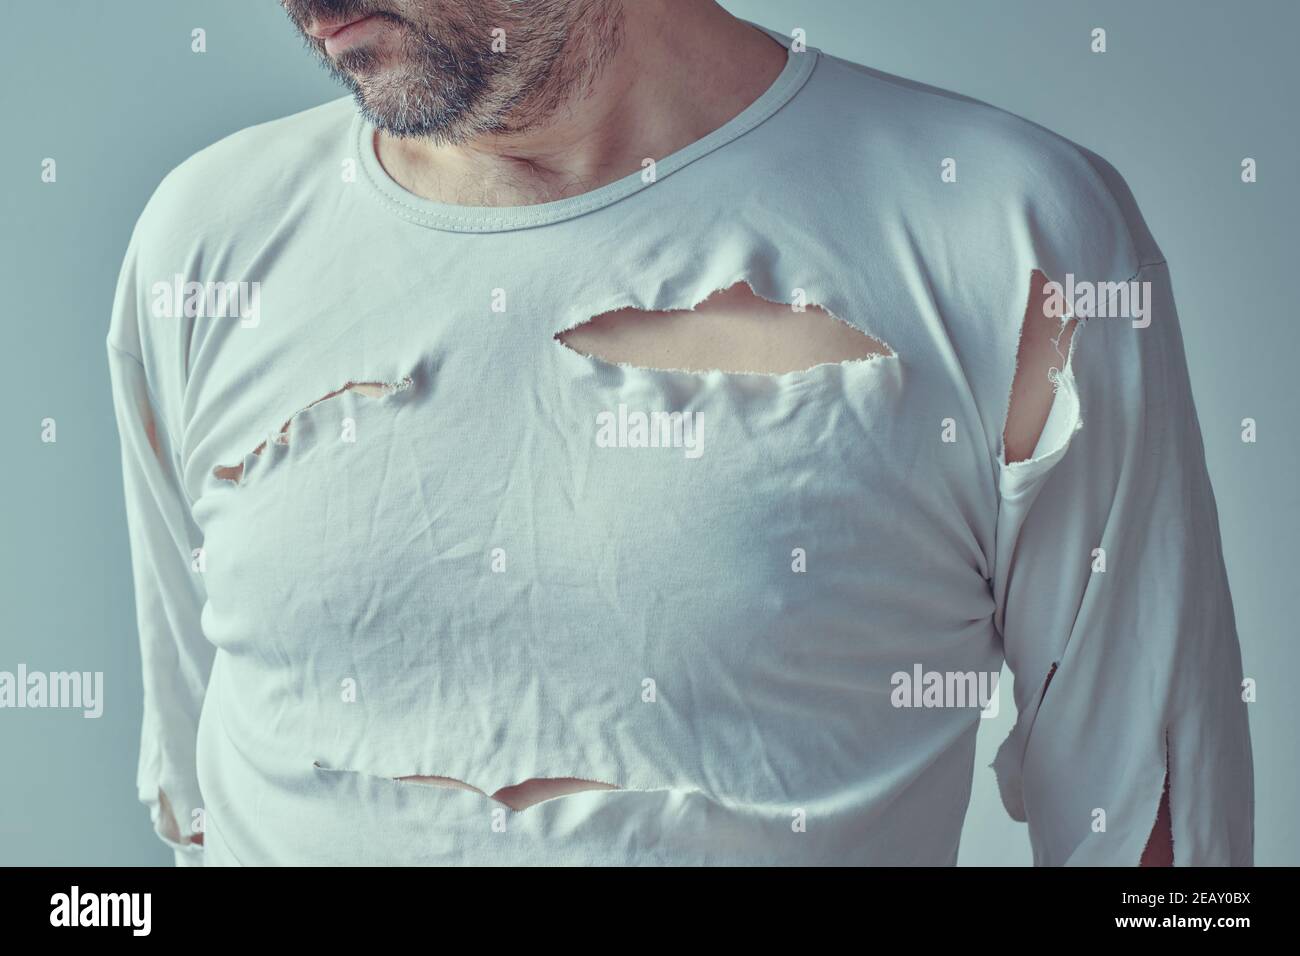 Vittima maschile di violenza domestica e abuso, immagine concettuale dell'uomo adulto con camicia strappata, fuoco selettivo Foto Stock